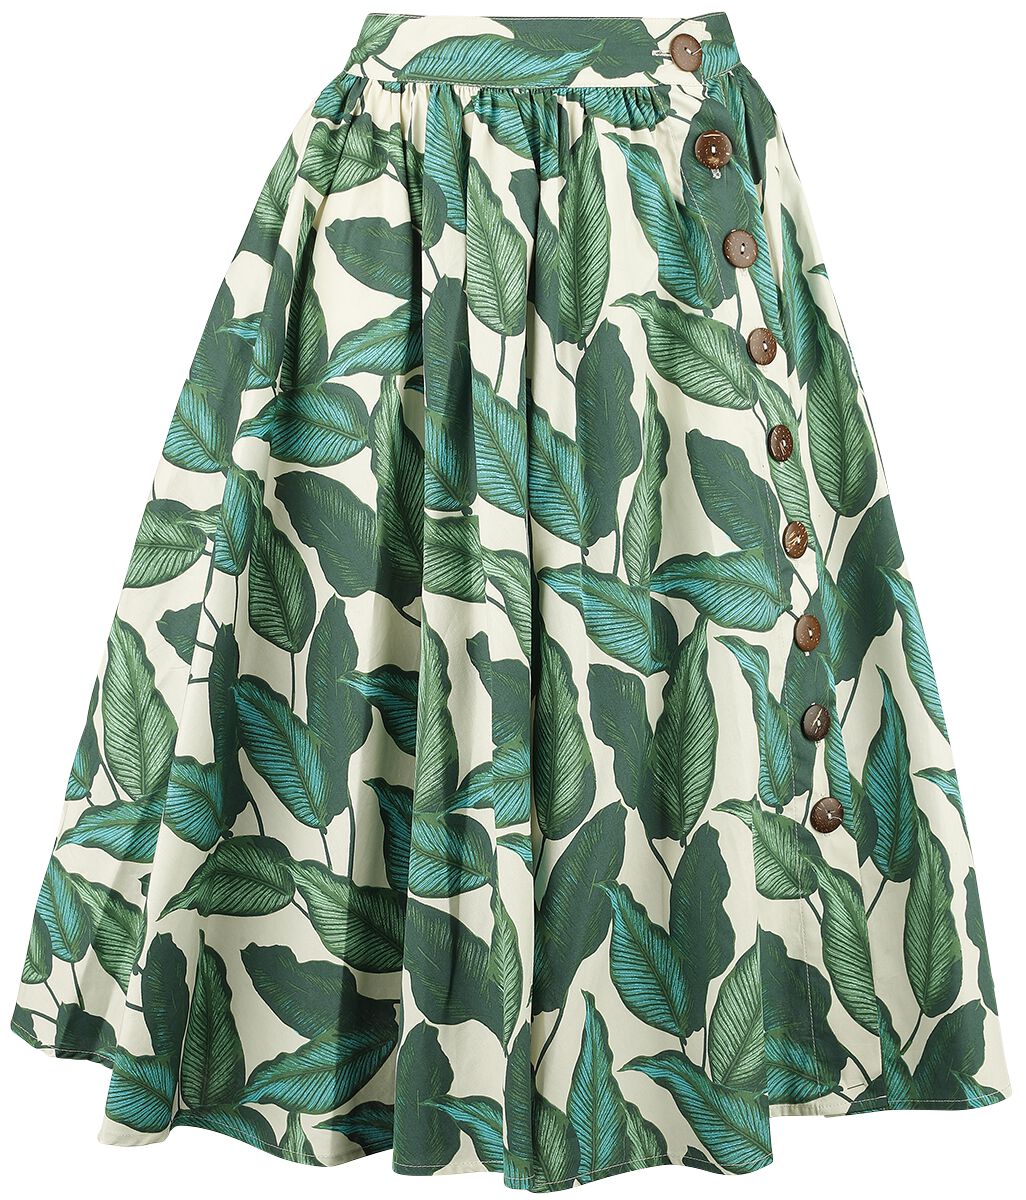 Hell Bunny Rainforest 50s Skirt Medium-length skirt green